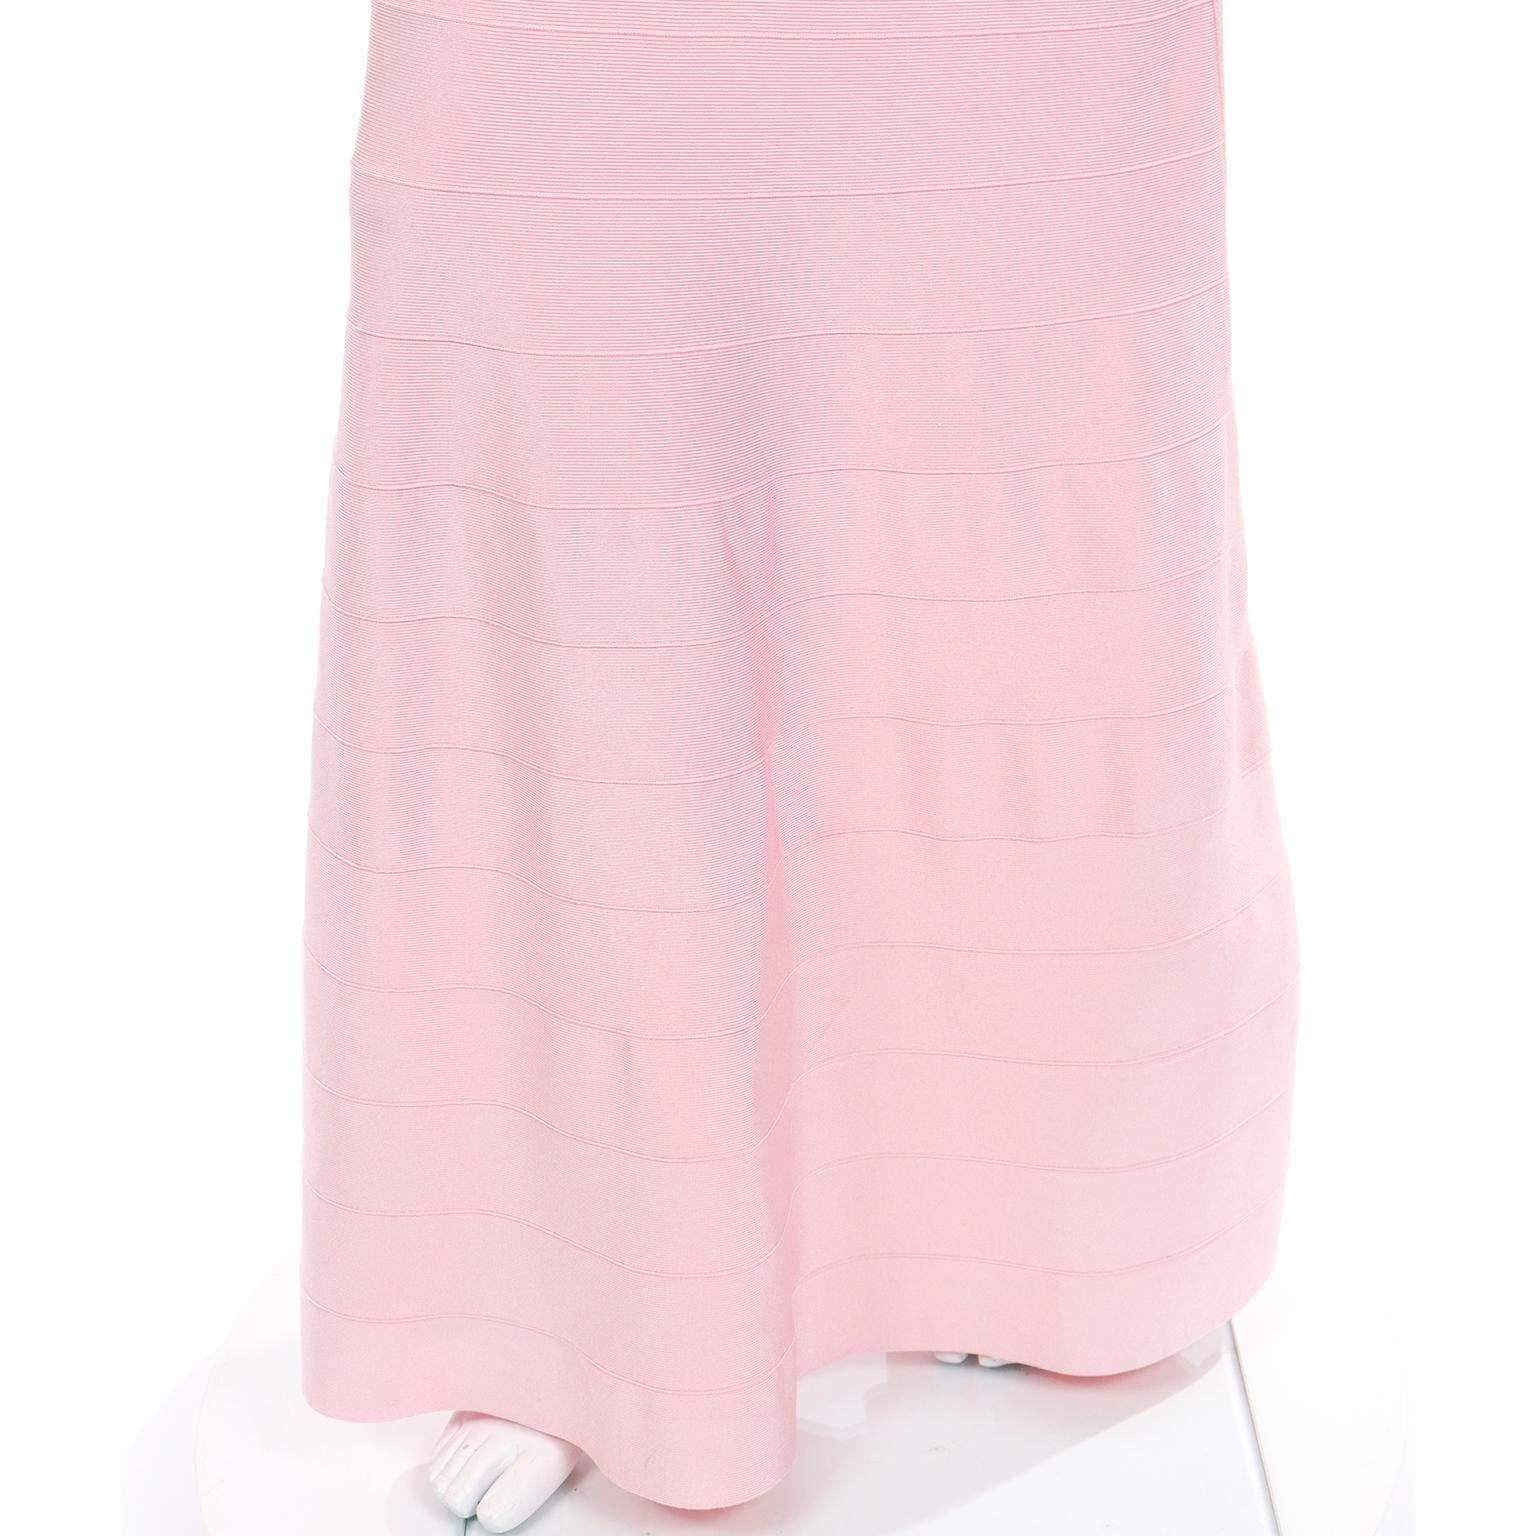 Herve Leger Full Length Pink Bandage Scoop Neck Dress 1